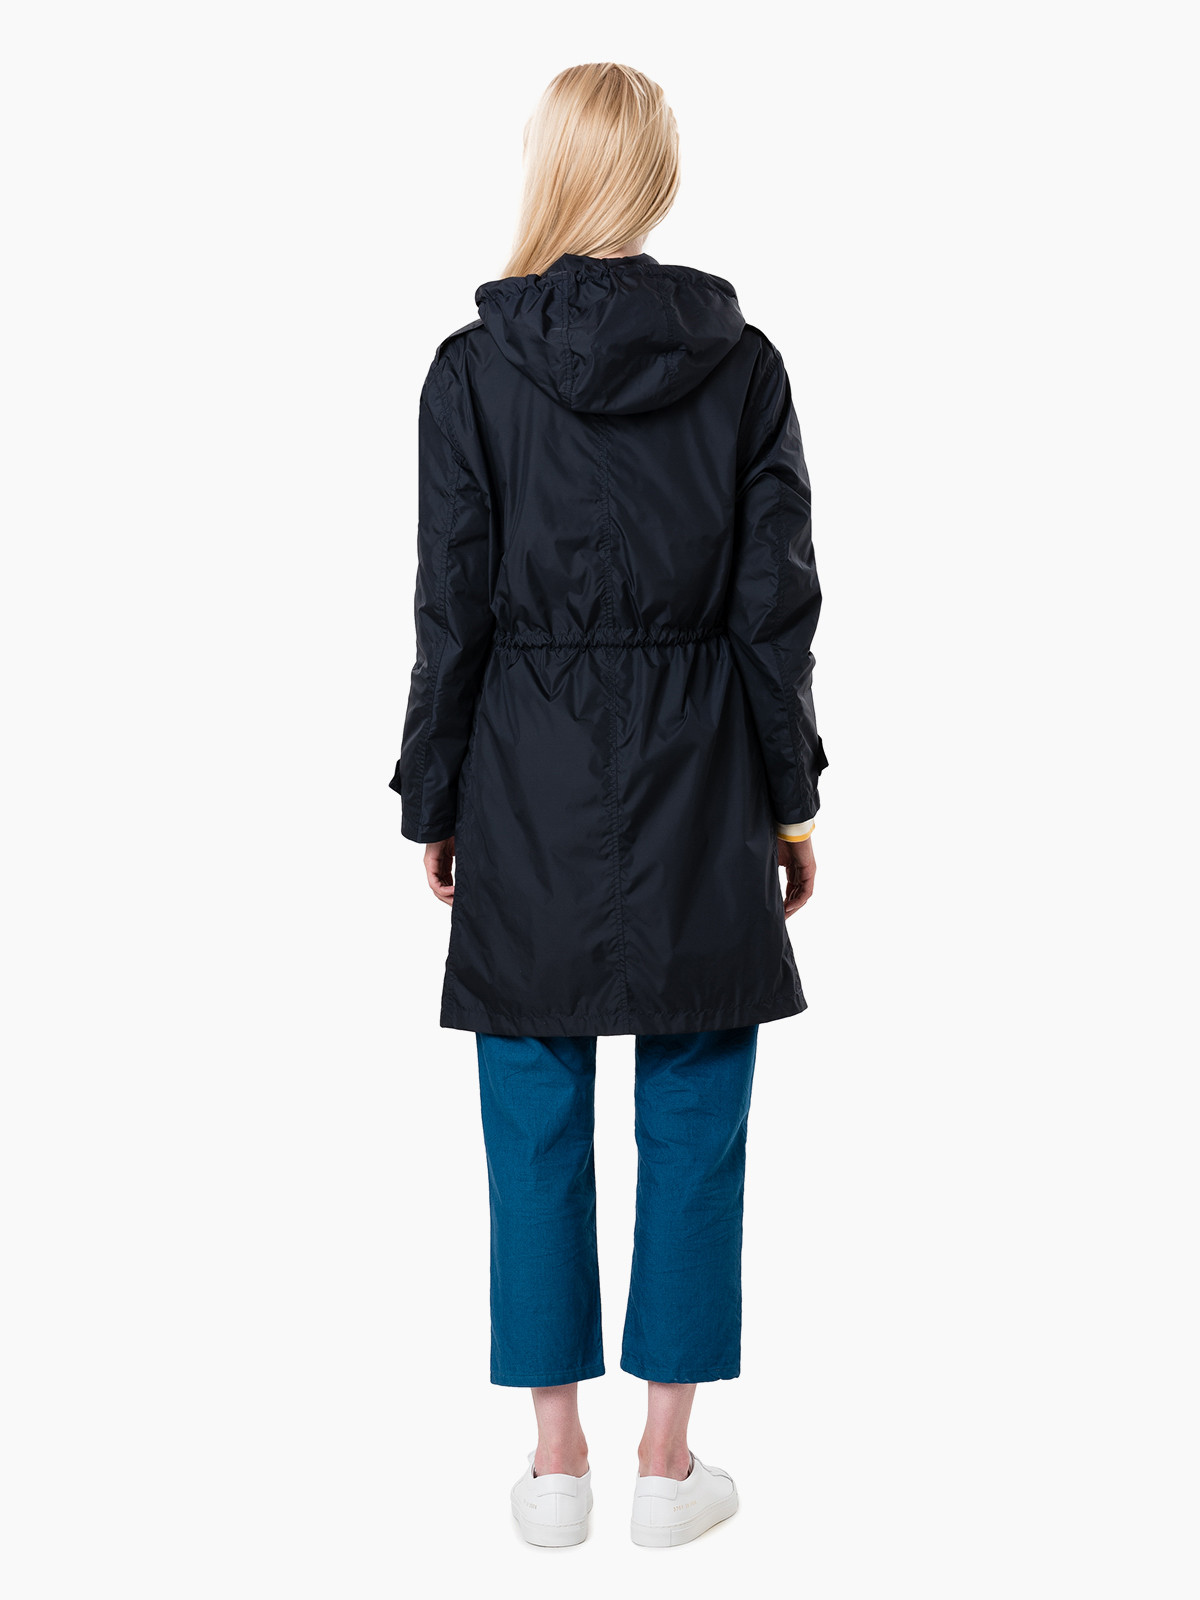 Женская куртка Aspesi Alloro raincoat